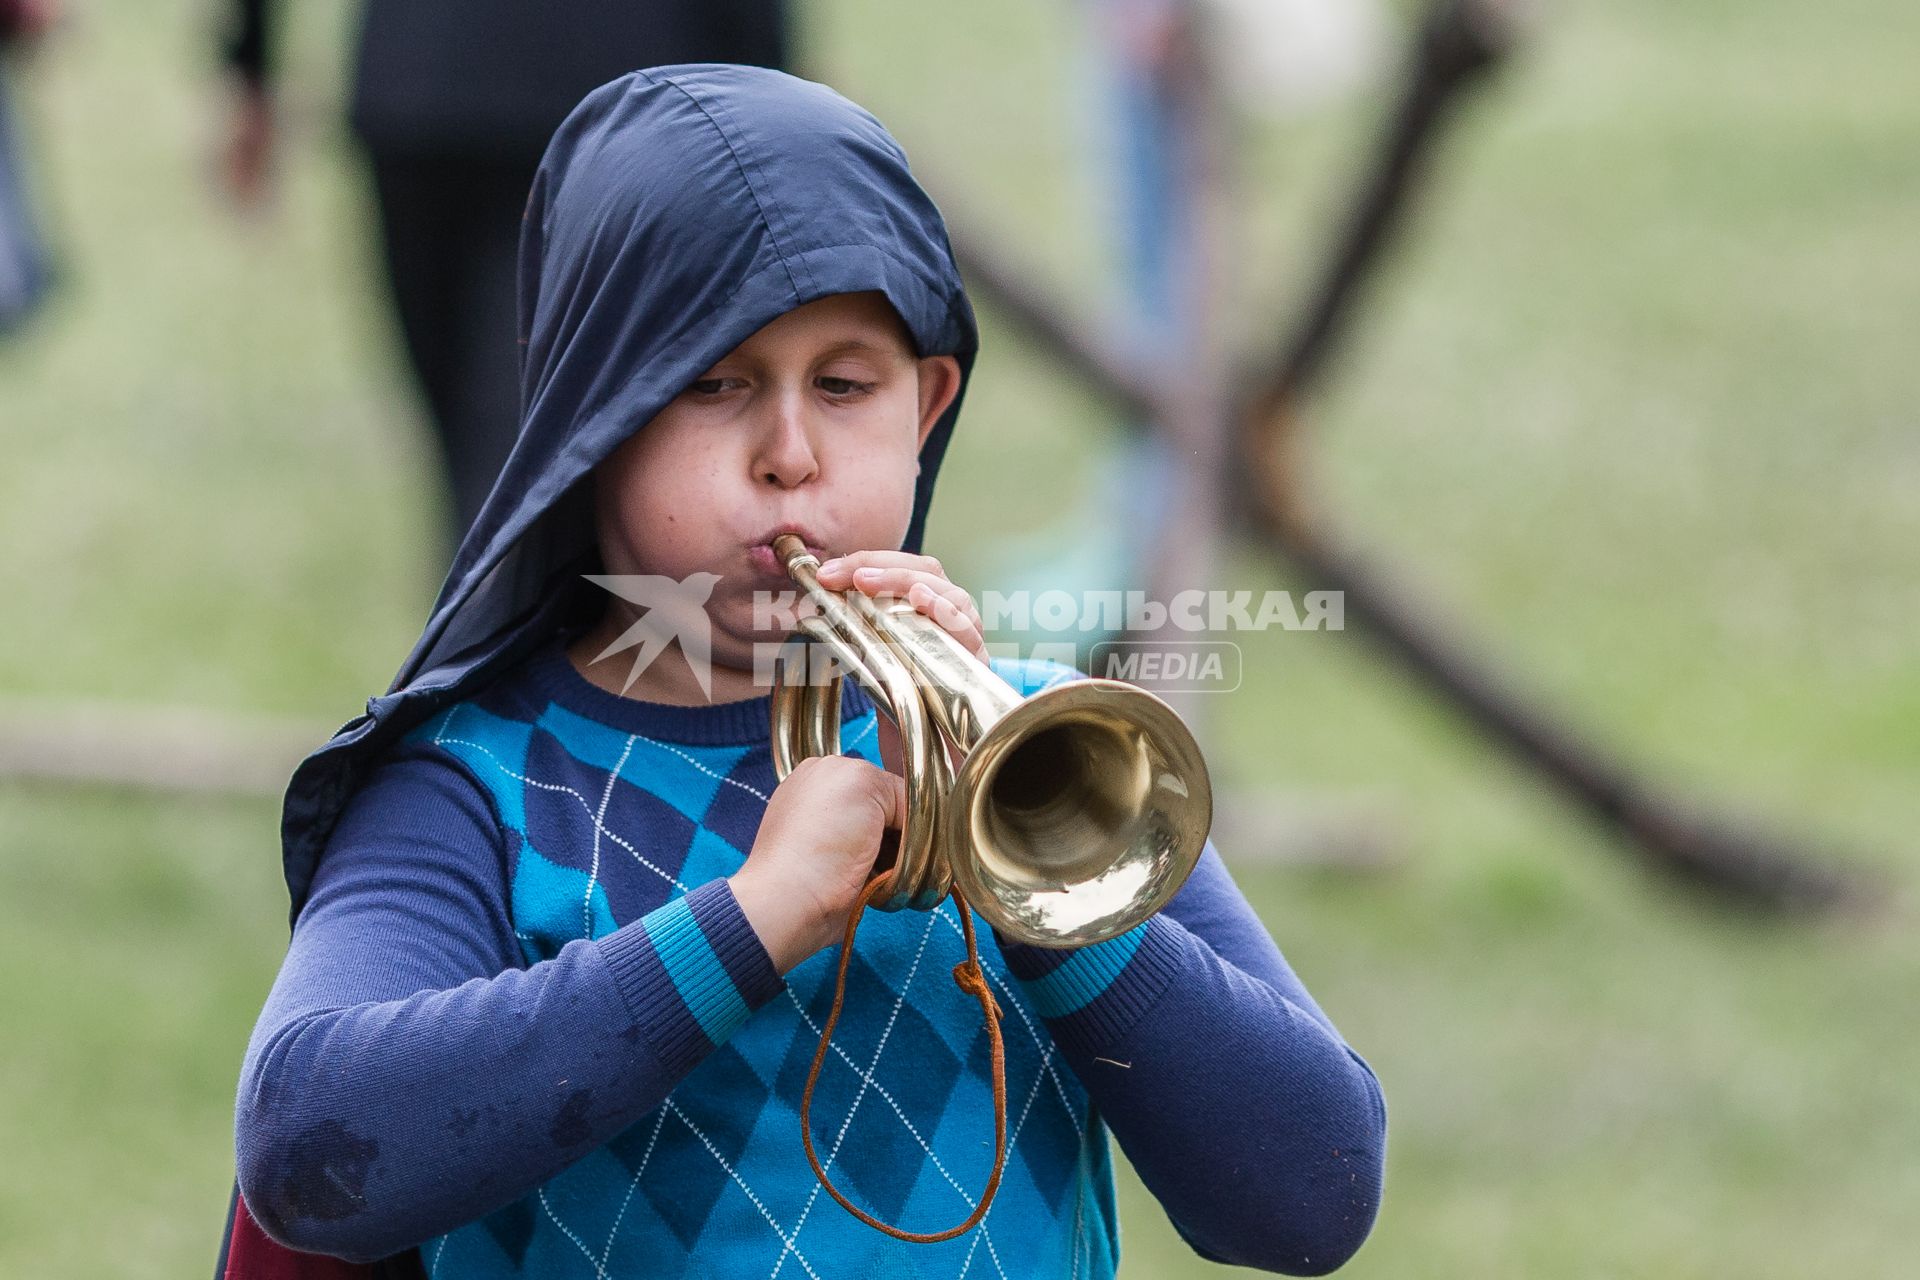 Челябинск. Мальчик играет на трубе во время проведения военно-исторической реконструкции Брусиловского прорыва.